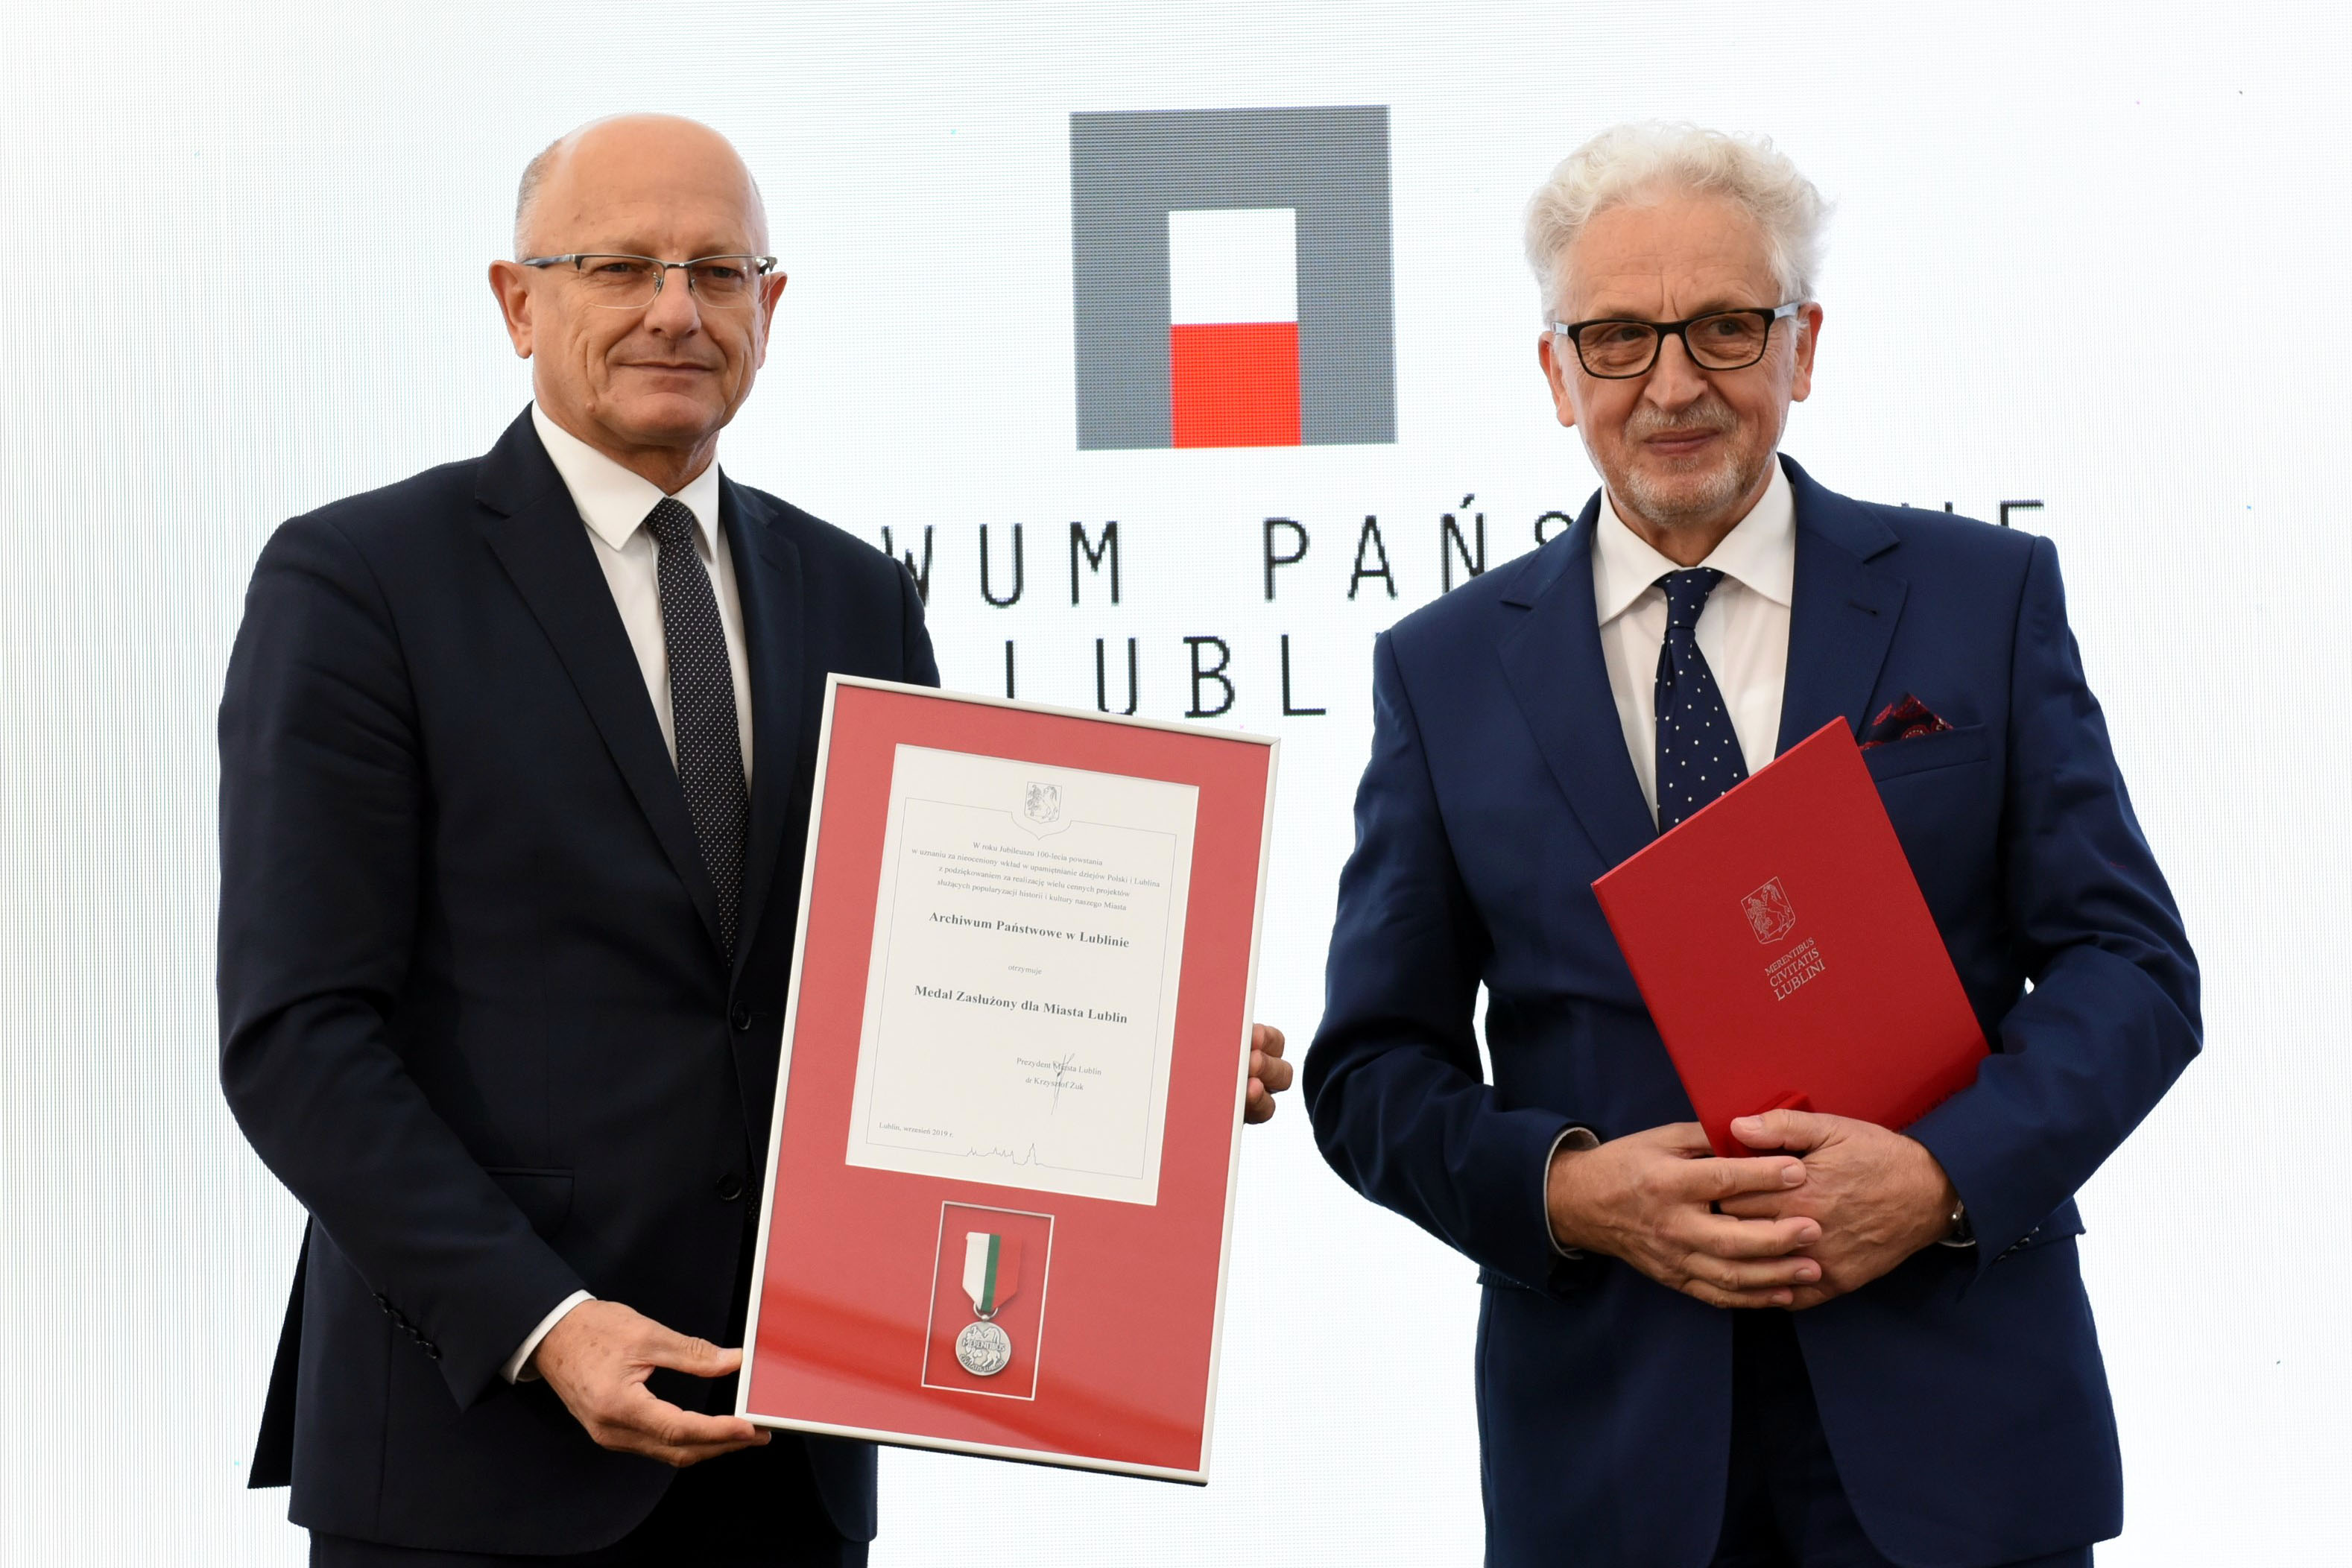 Prezydent Miasta Lublin wręcza Medal Zasłużony dla Miasta Lublin dla Archiwum Państwowego w Lublinie